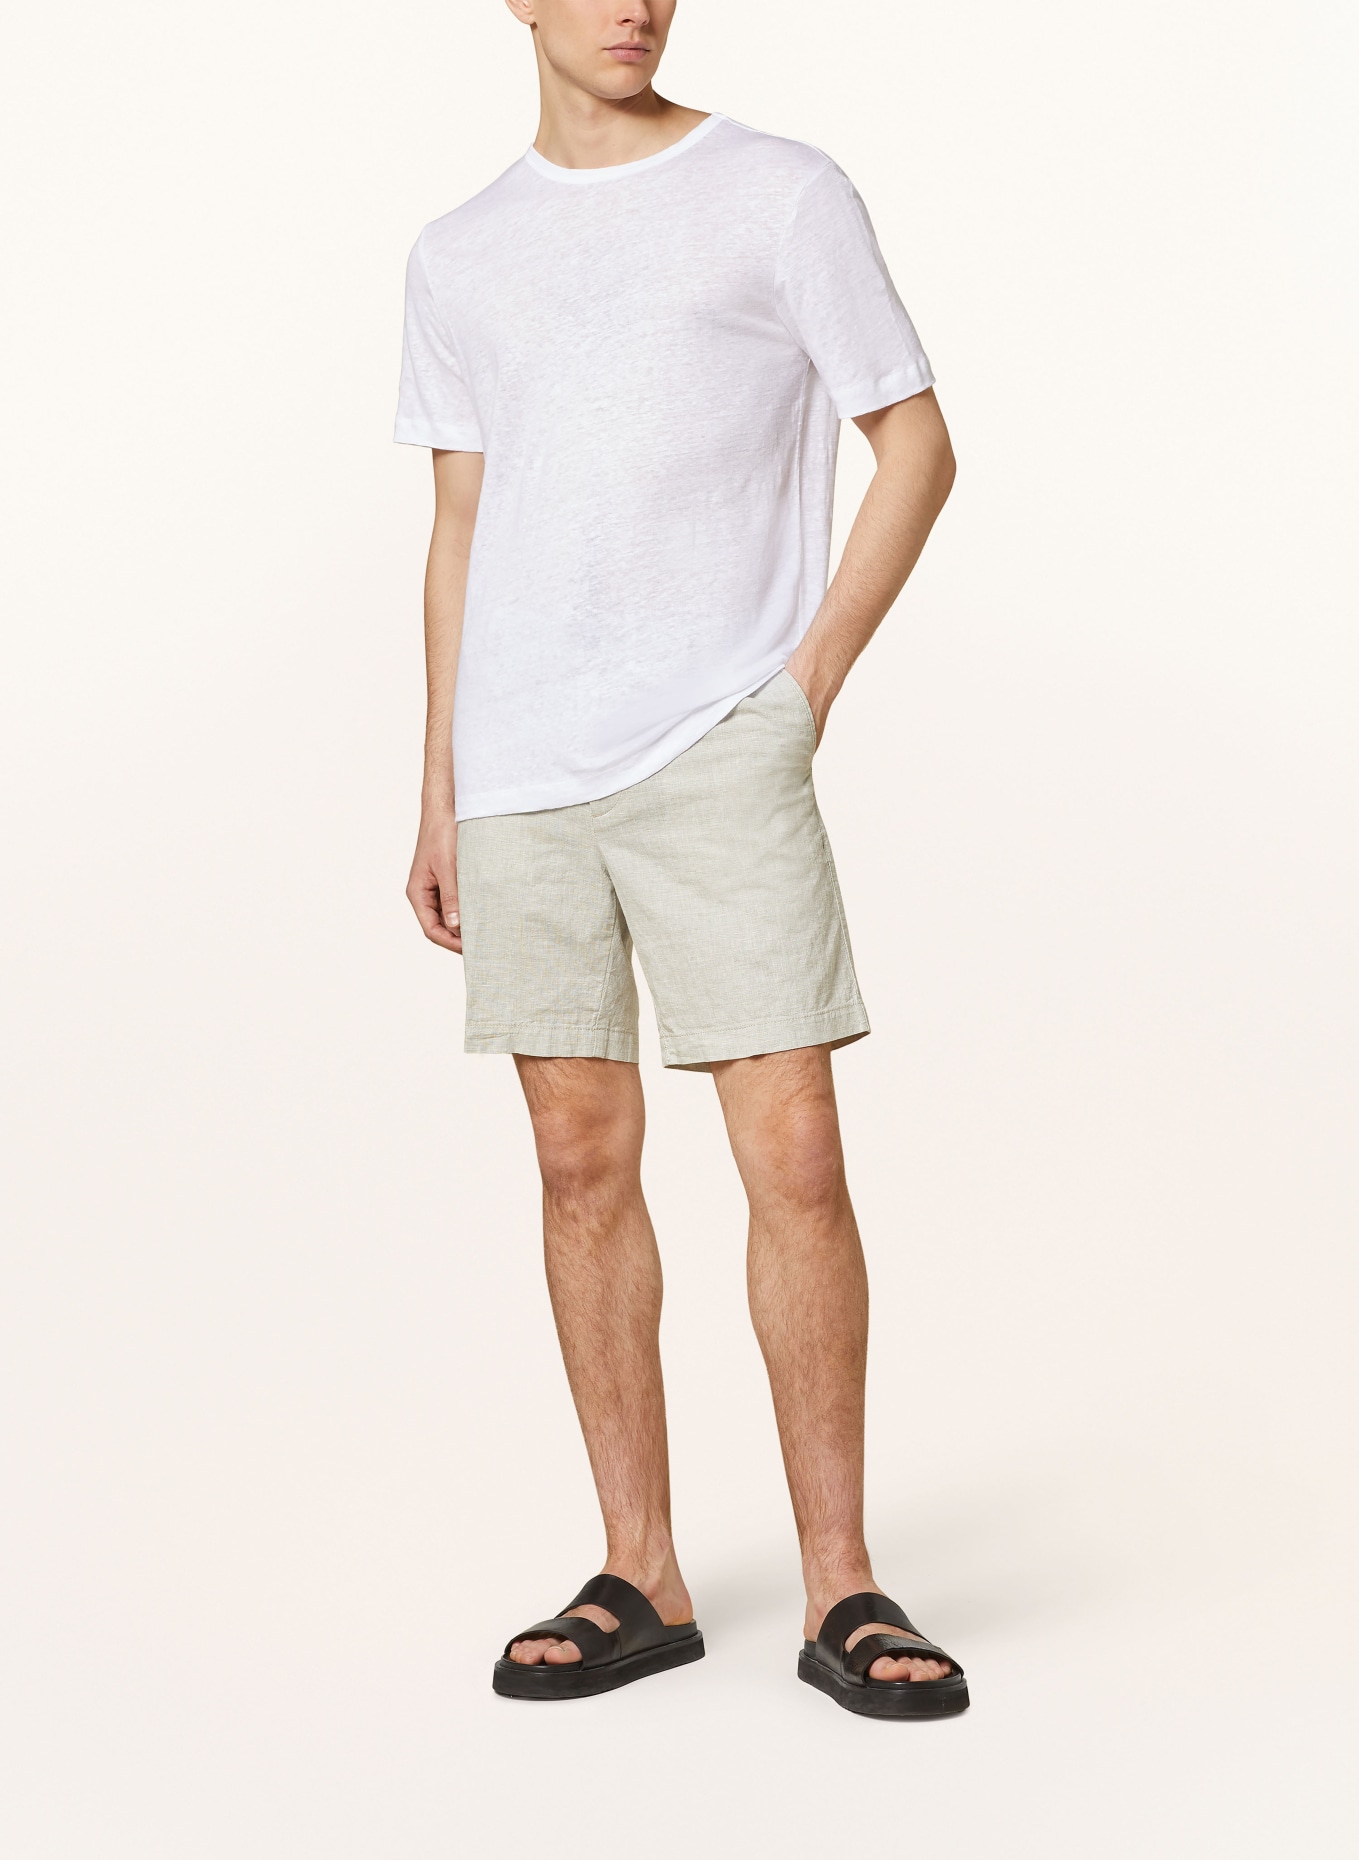 BOSS T-shirt TIBURT made of linen, Color: WHITE (Image 2)